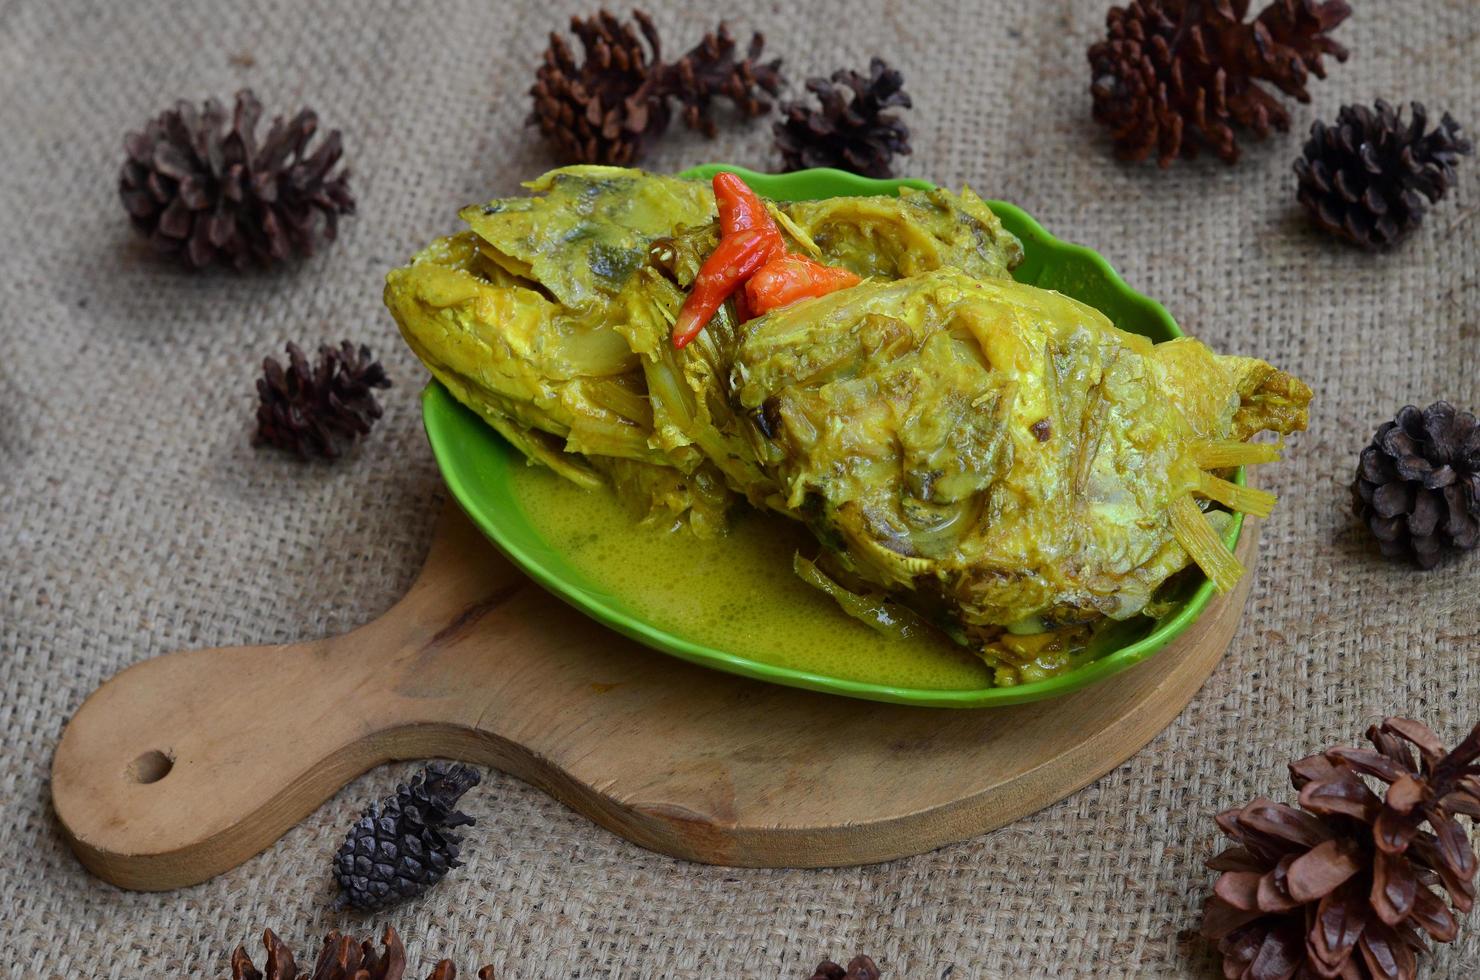 gulai képala kakap ou vivaneau poisson diriger, cuit dans curry assaisonnement, il goûts épicé, acide et sarriette. traditionnel padang cuisine, Ouest Sumatra, Indonésie. photo